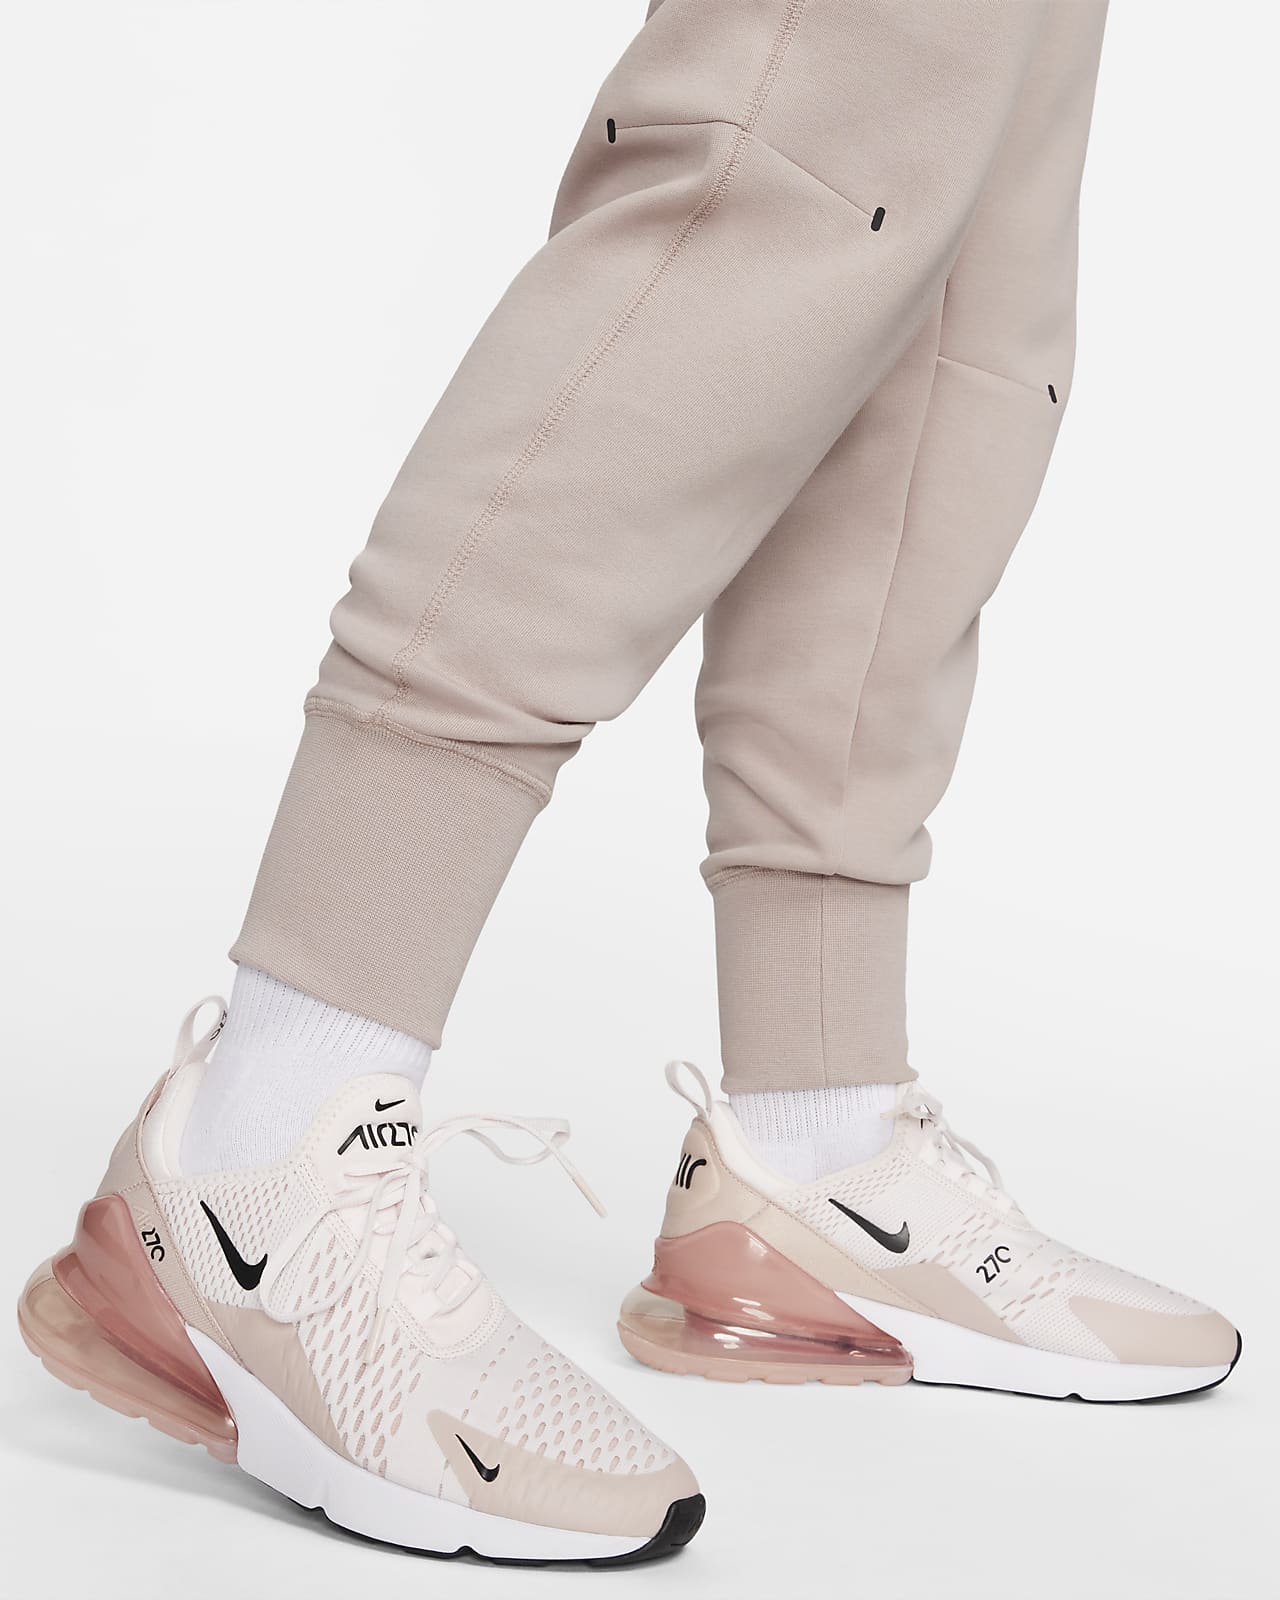 Pantalones para mujer Nike Tech Fleece. Nike.com